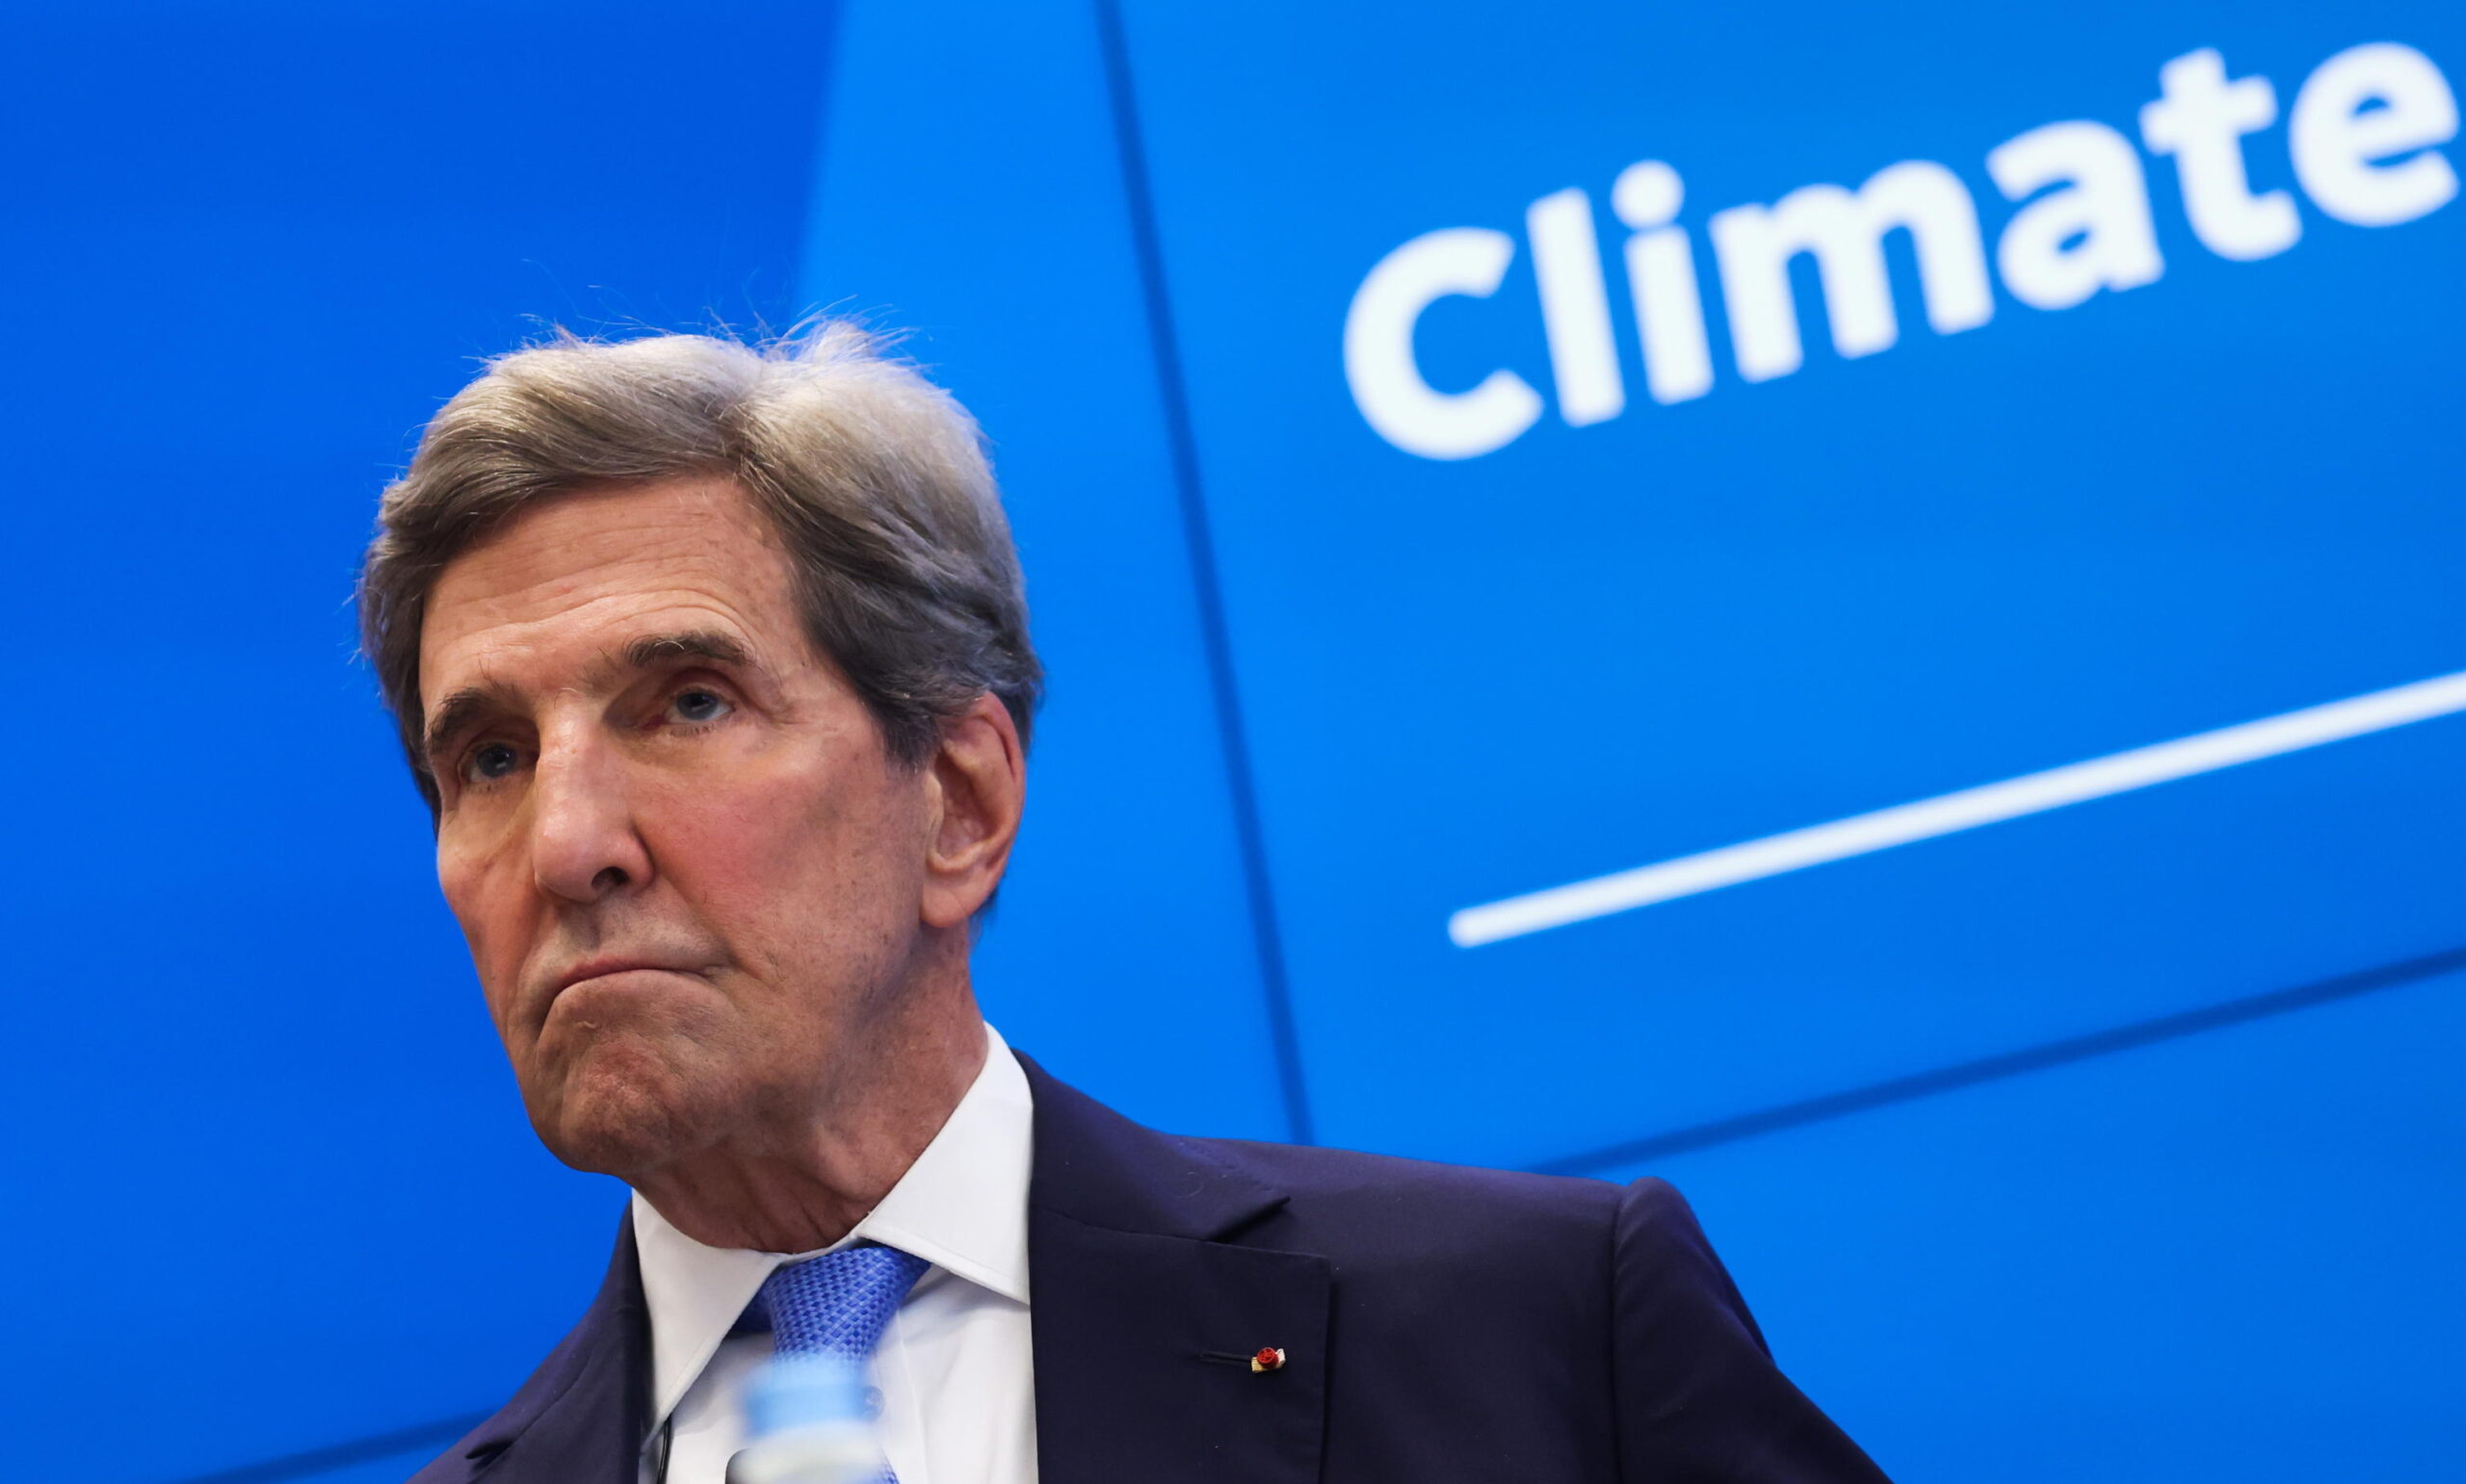 Climate Change, Kerry a Pechino: cosa faranno i due principali inquinatori